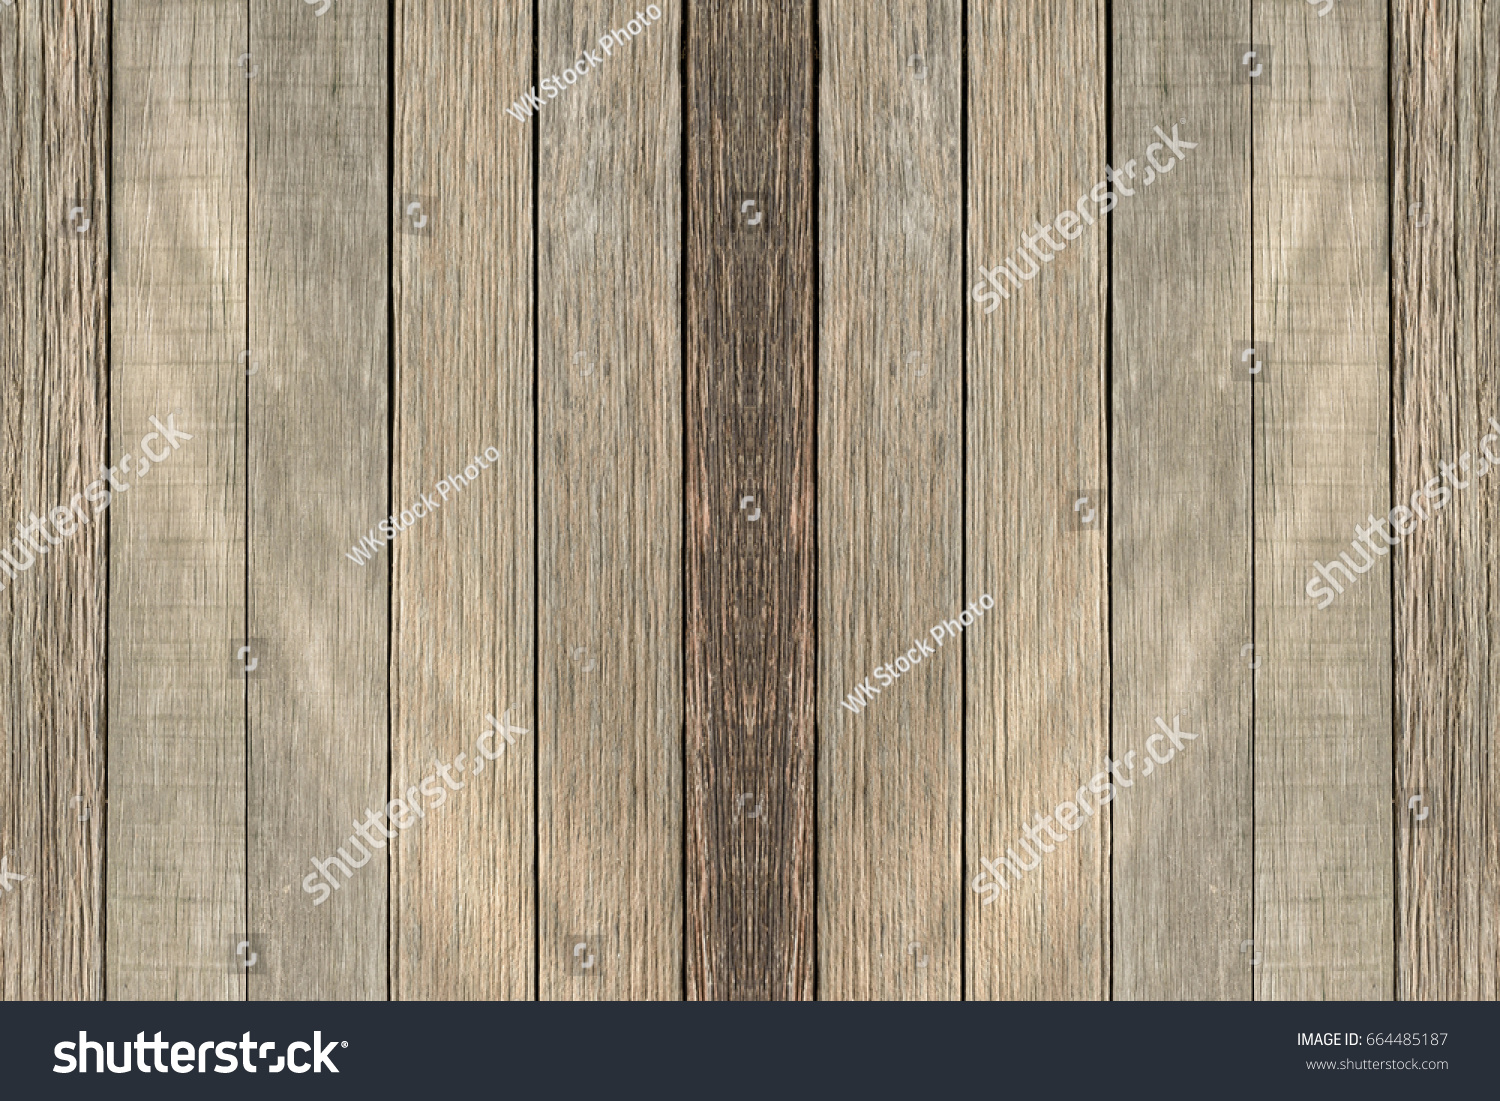 Wood background #664485187